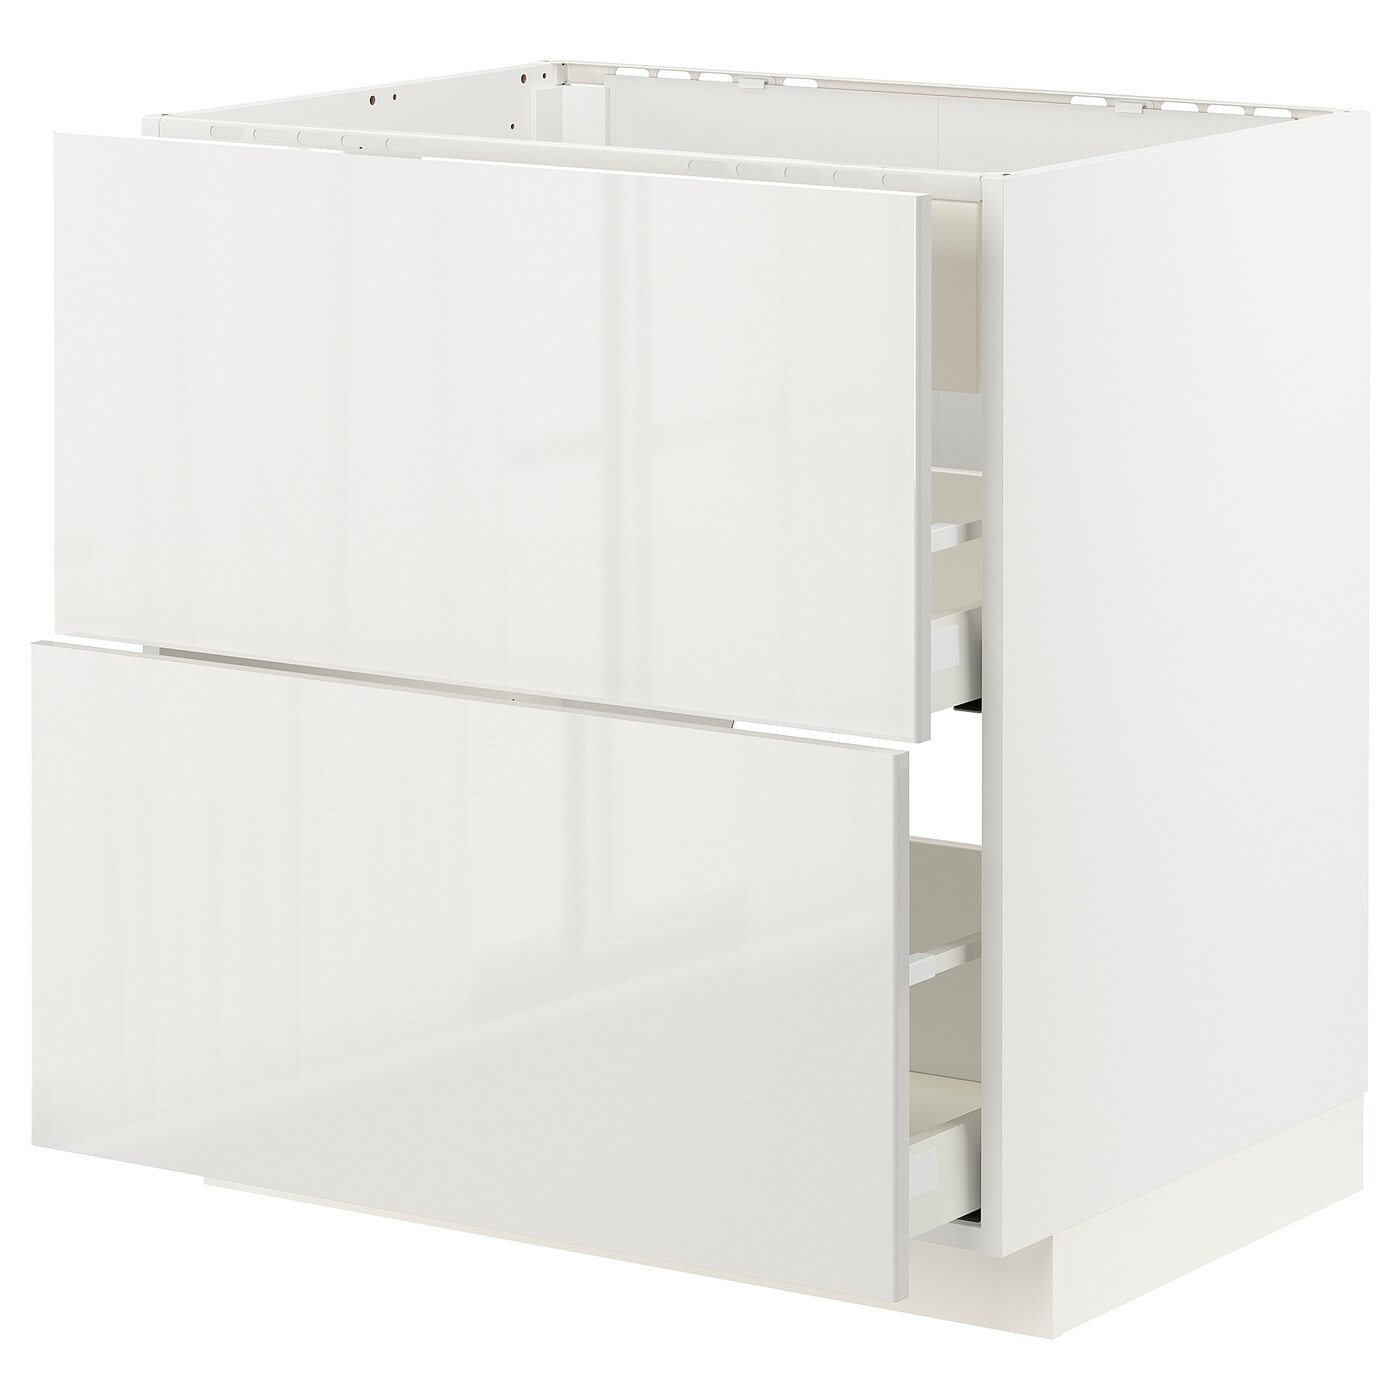 Напольный кухонный шкаф - IKEA METOD MAXIMERA, 88x62x80см, белый, МЕТОД МАКСИМЕРА ИКЕА